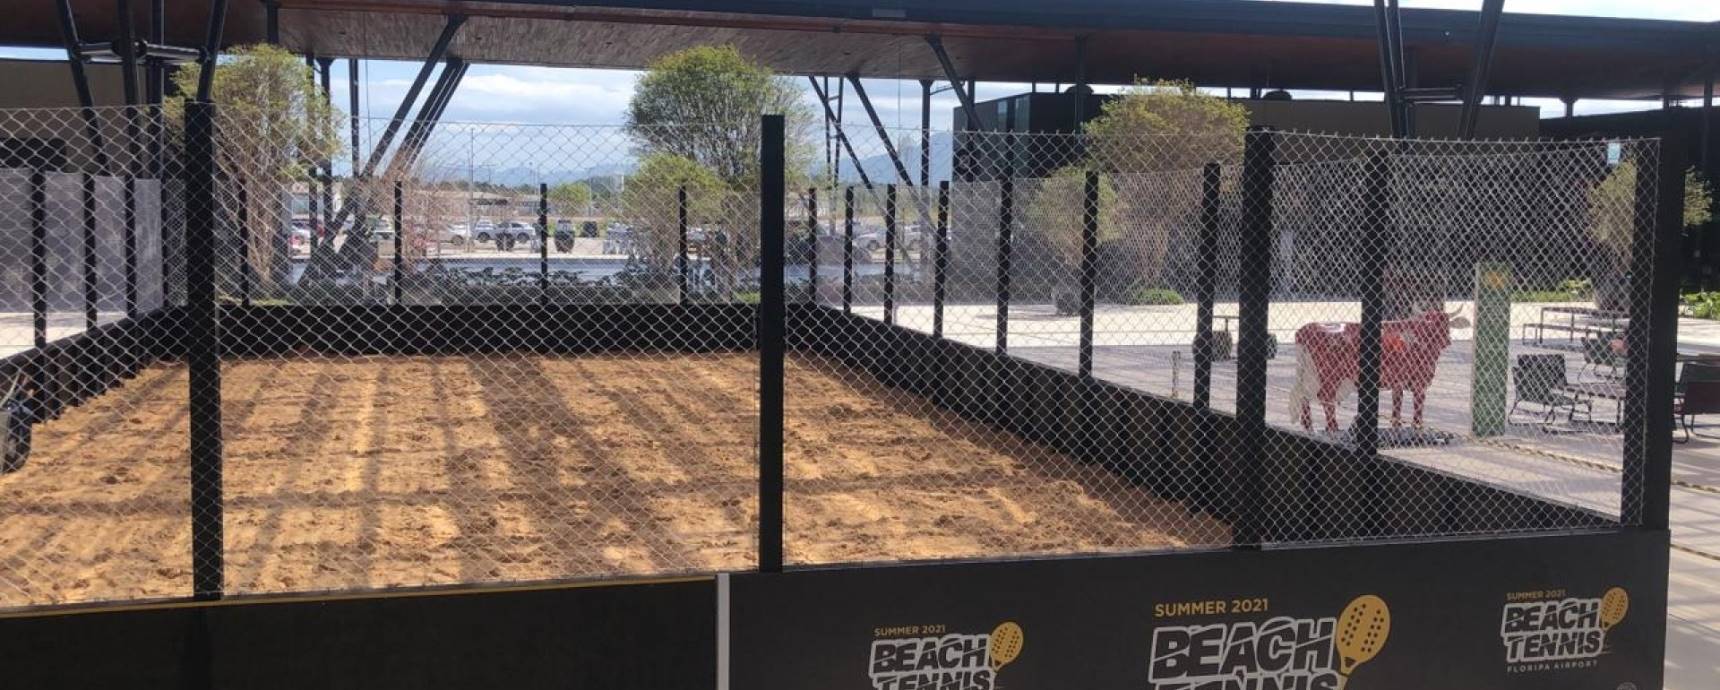 Boulevard 14/32, en el aeropuerto de Florianópolis, tendrá una arena gratuita para Beach Tennis